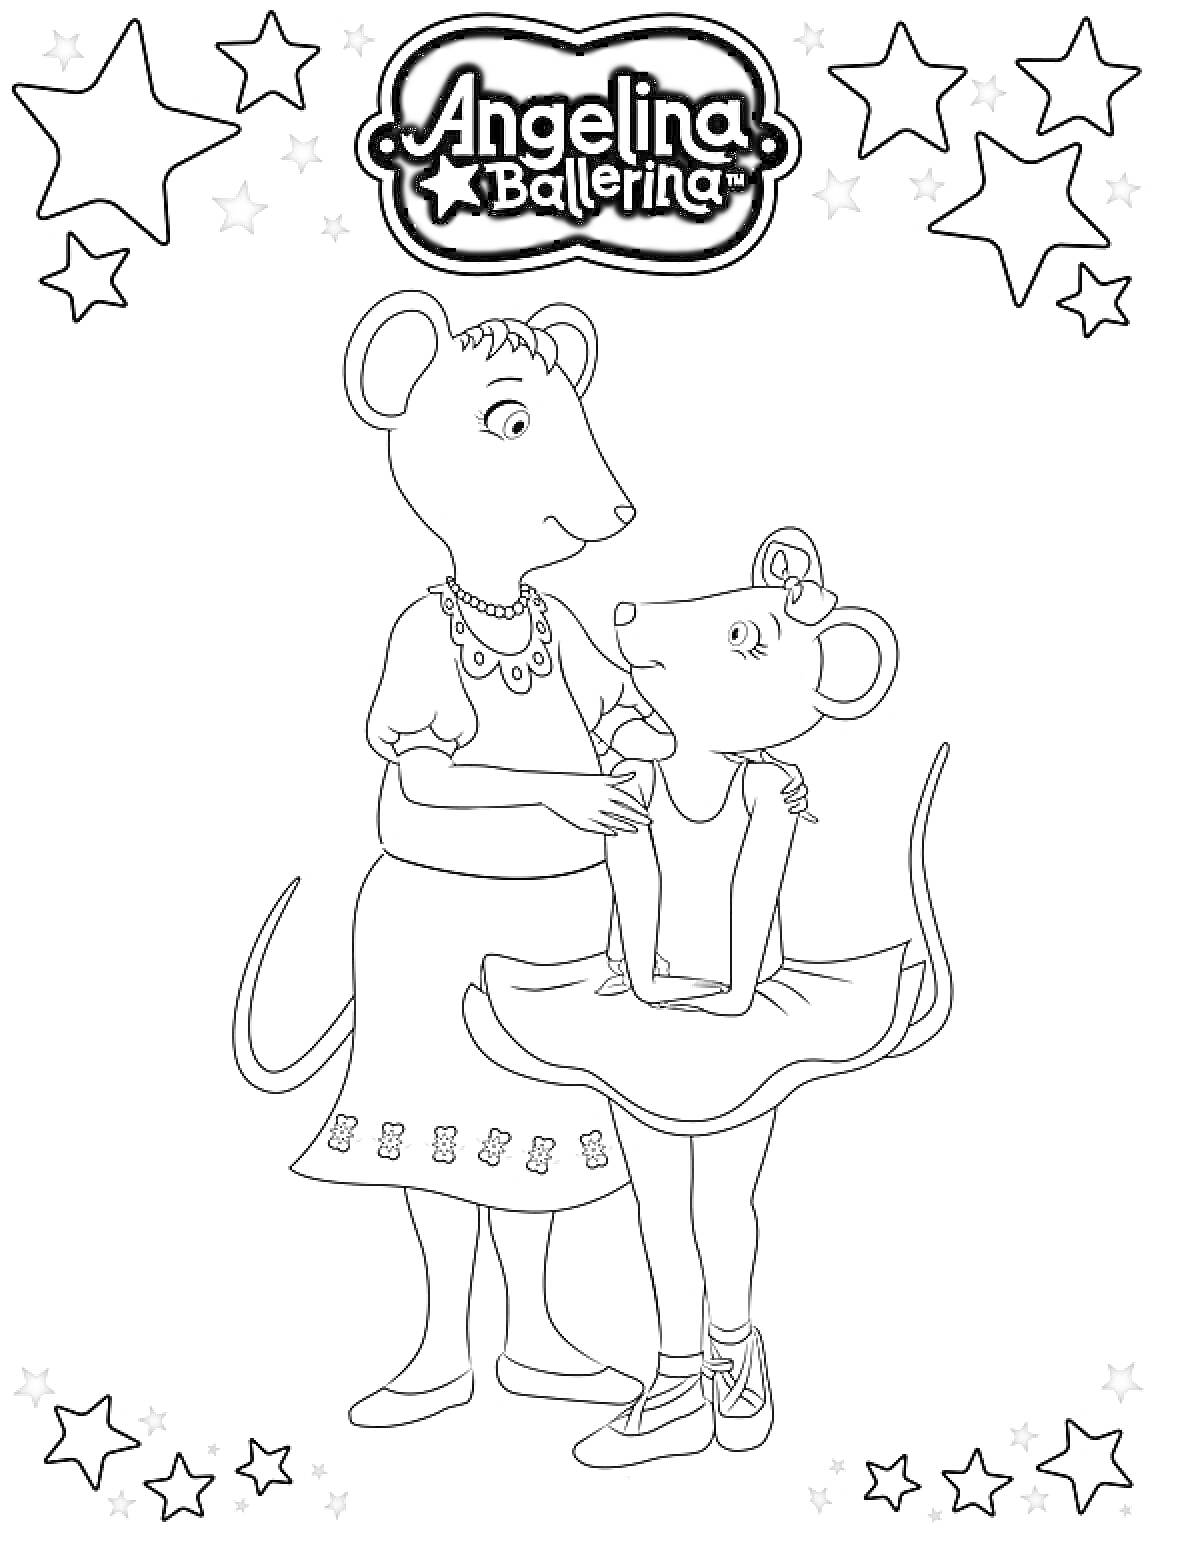 Раскраска Две мышки - взрослая и молодая - в образе, одна в танцевальной форме, окружены звездами, логотип 